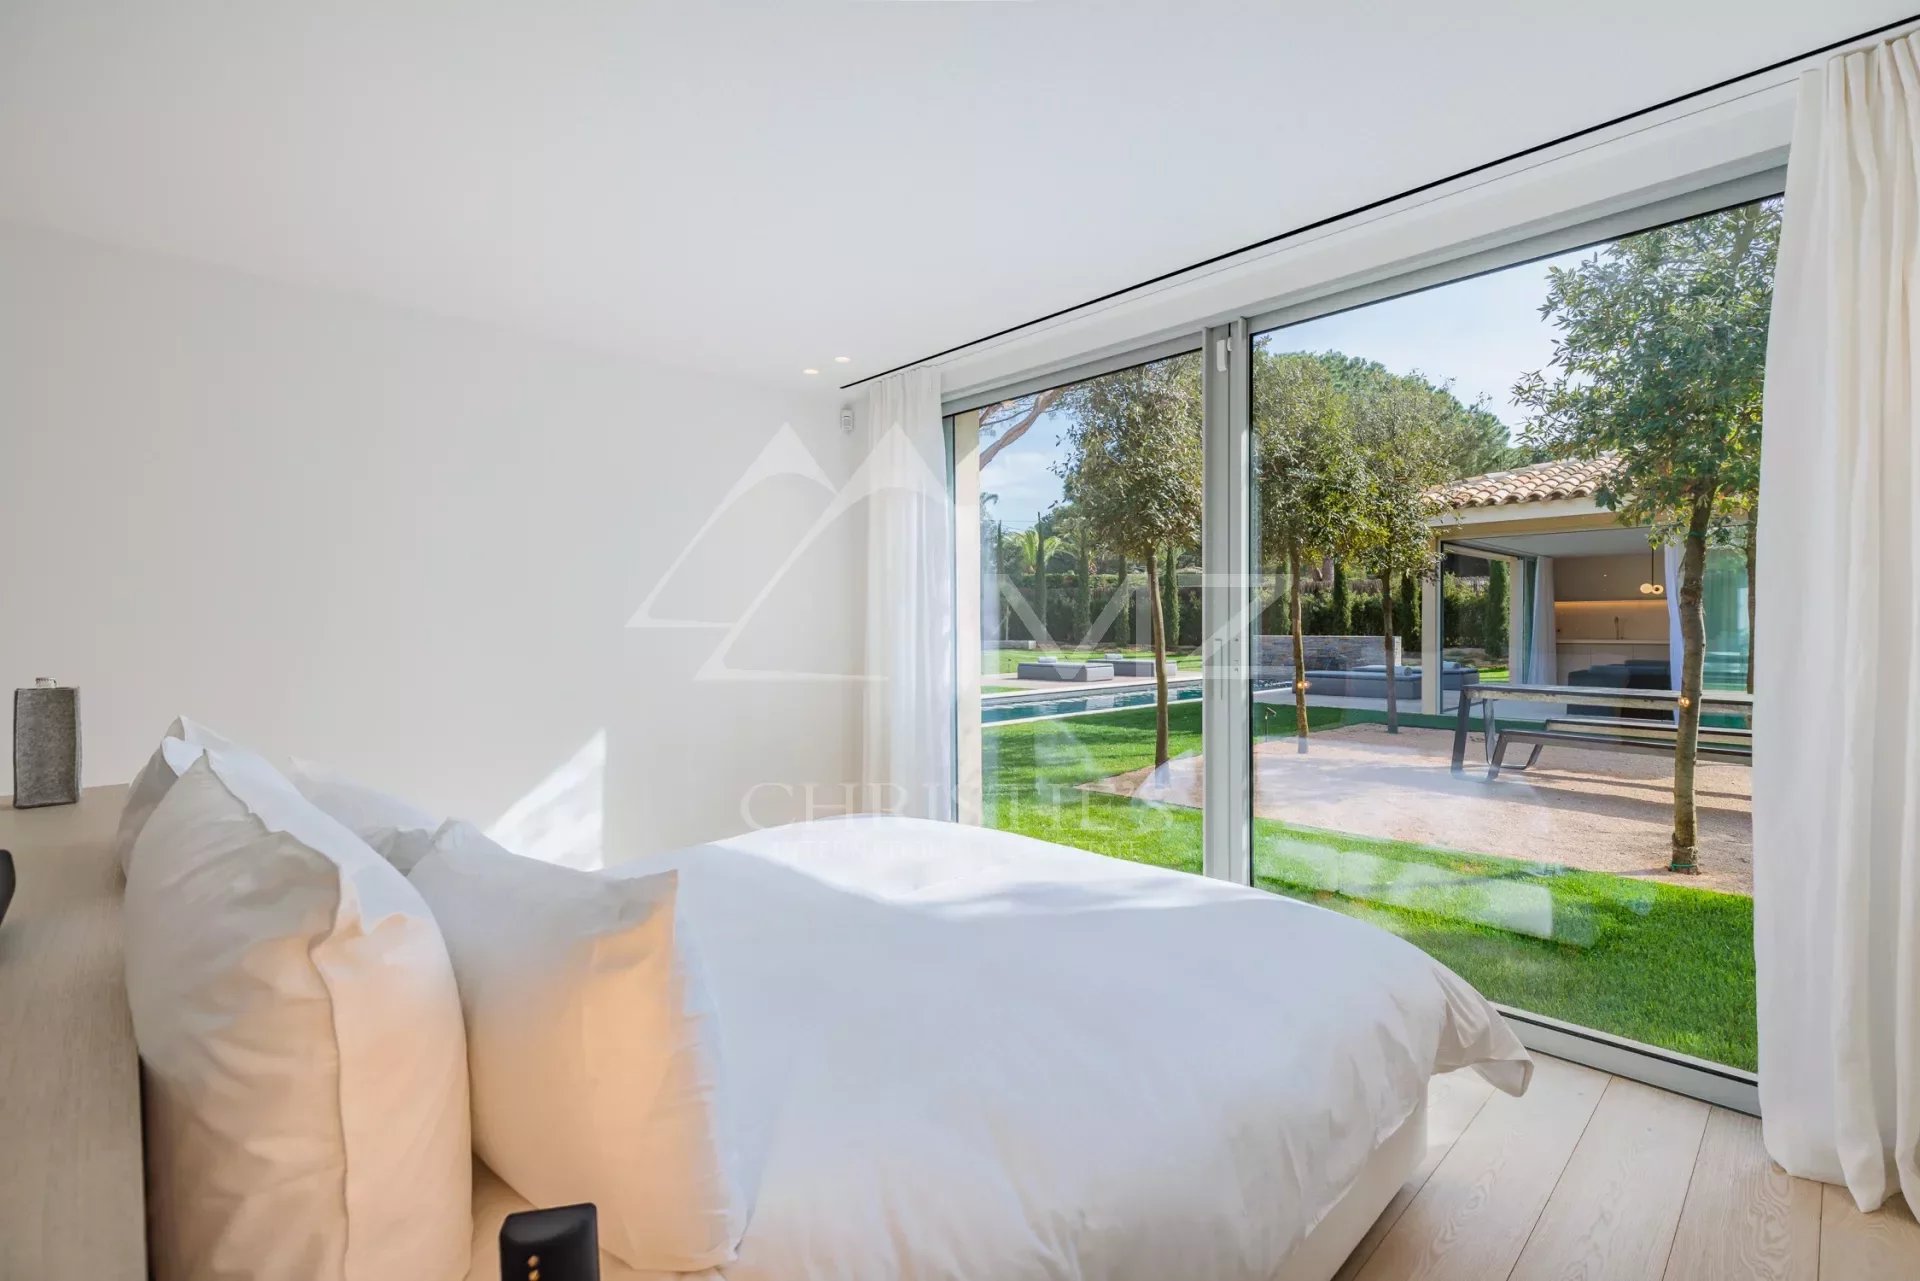 Wunderschöne neue provenzalische/moderne Villa in Saint-Tropez